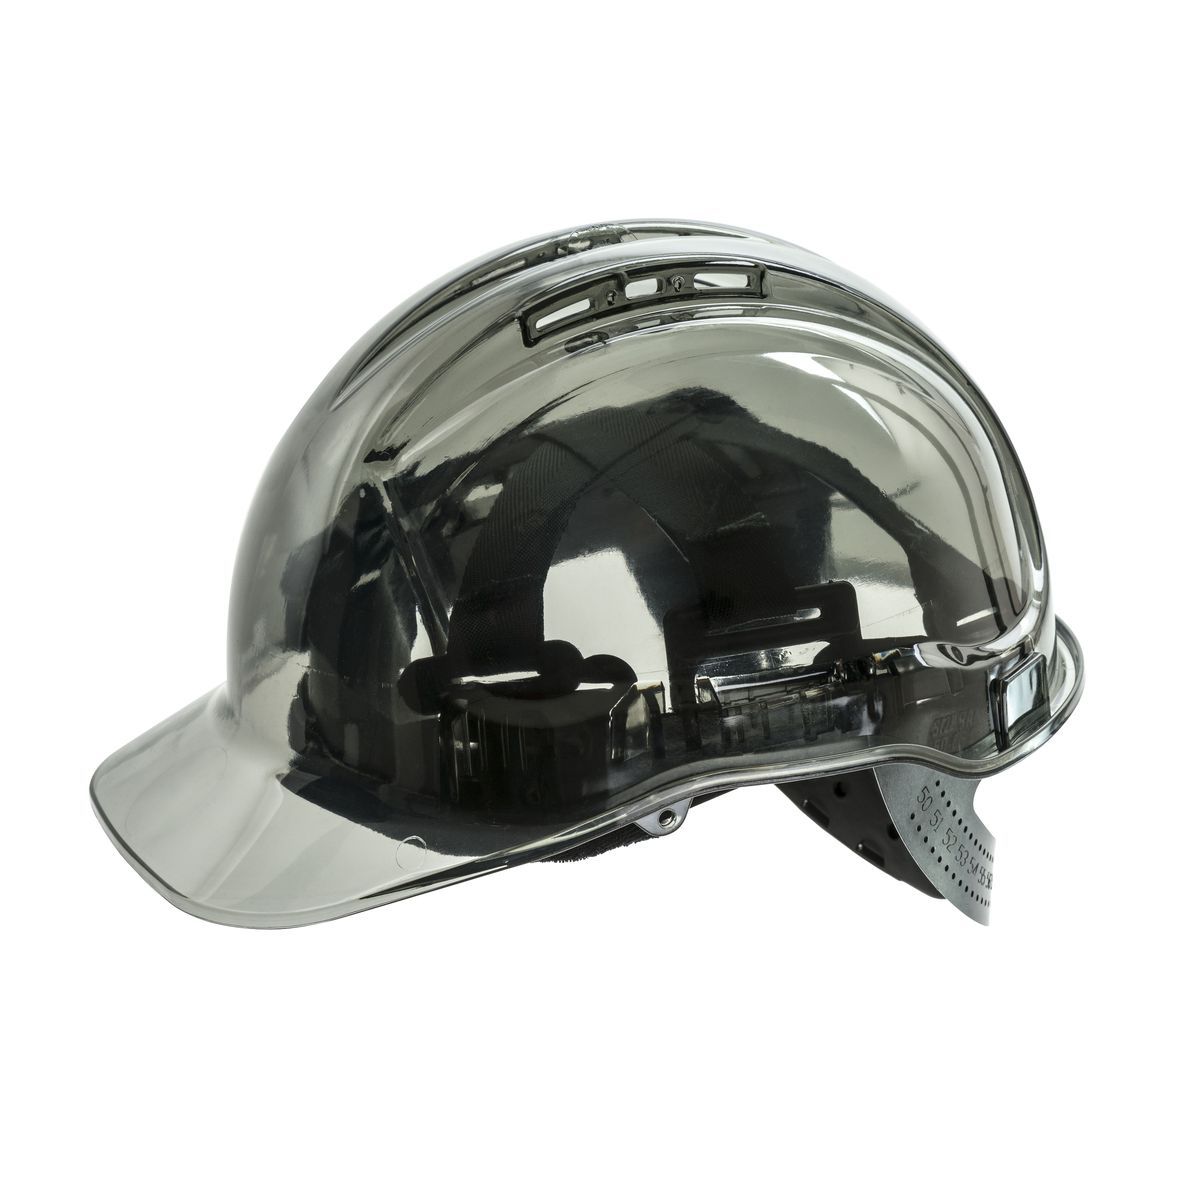 Style PV54 Peak View Plus Helmet-6